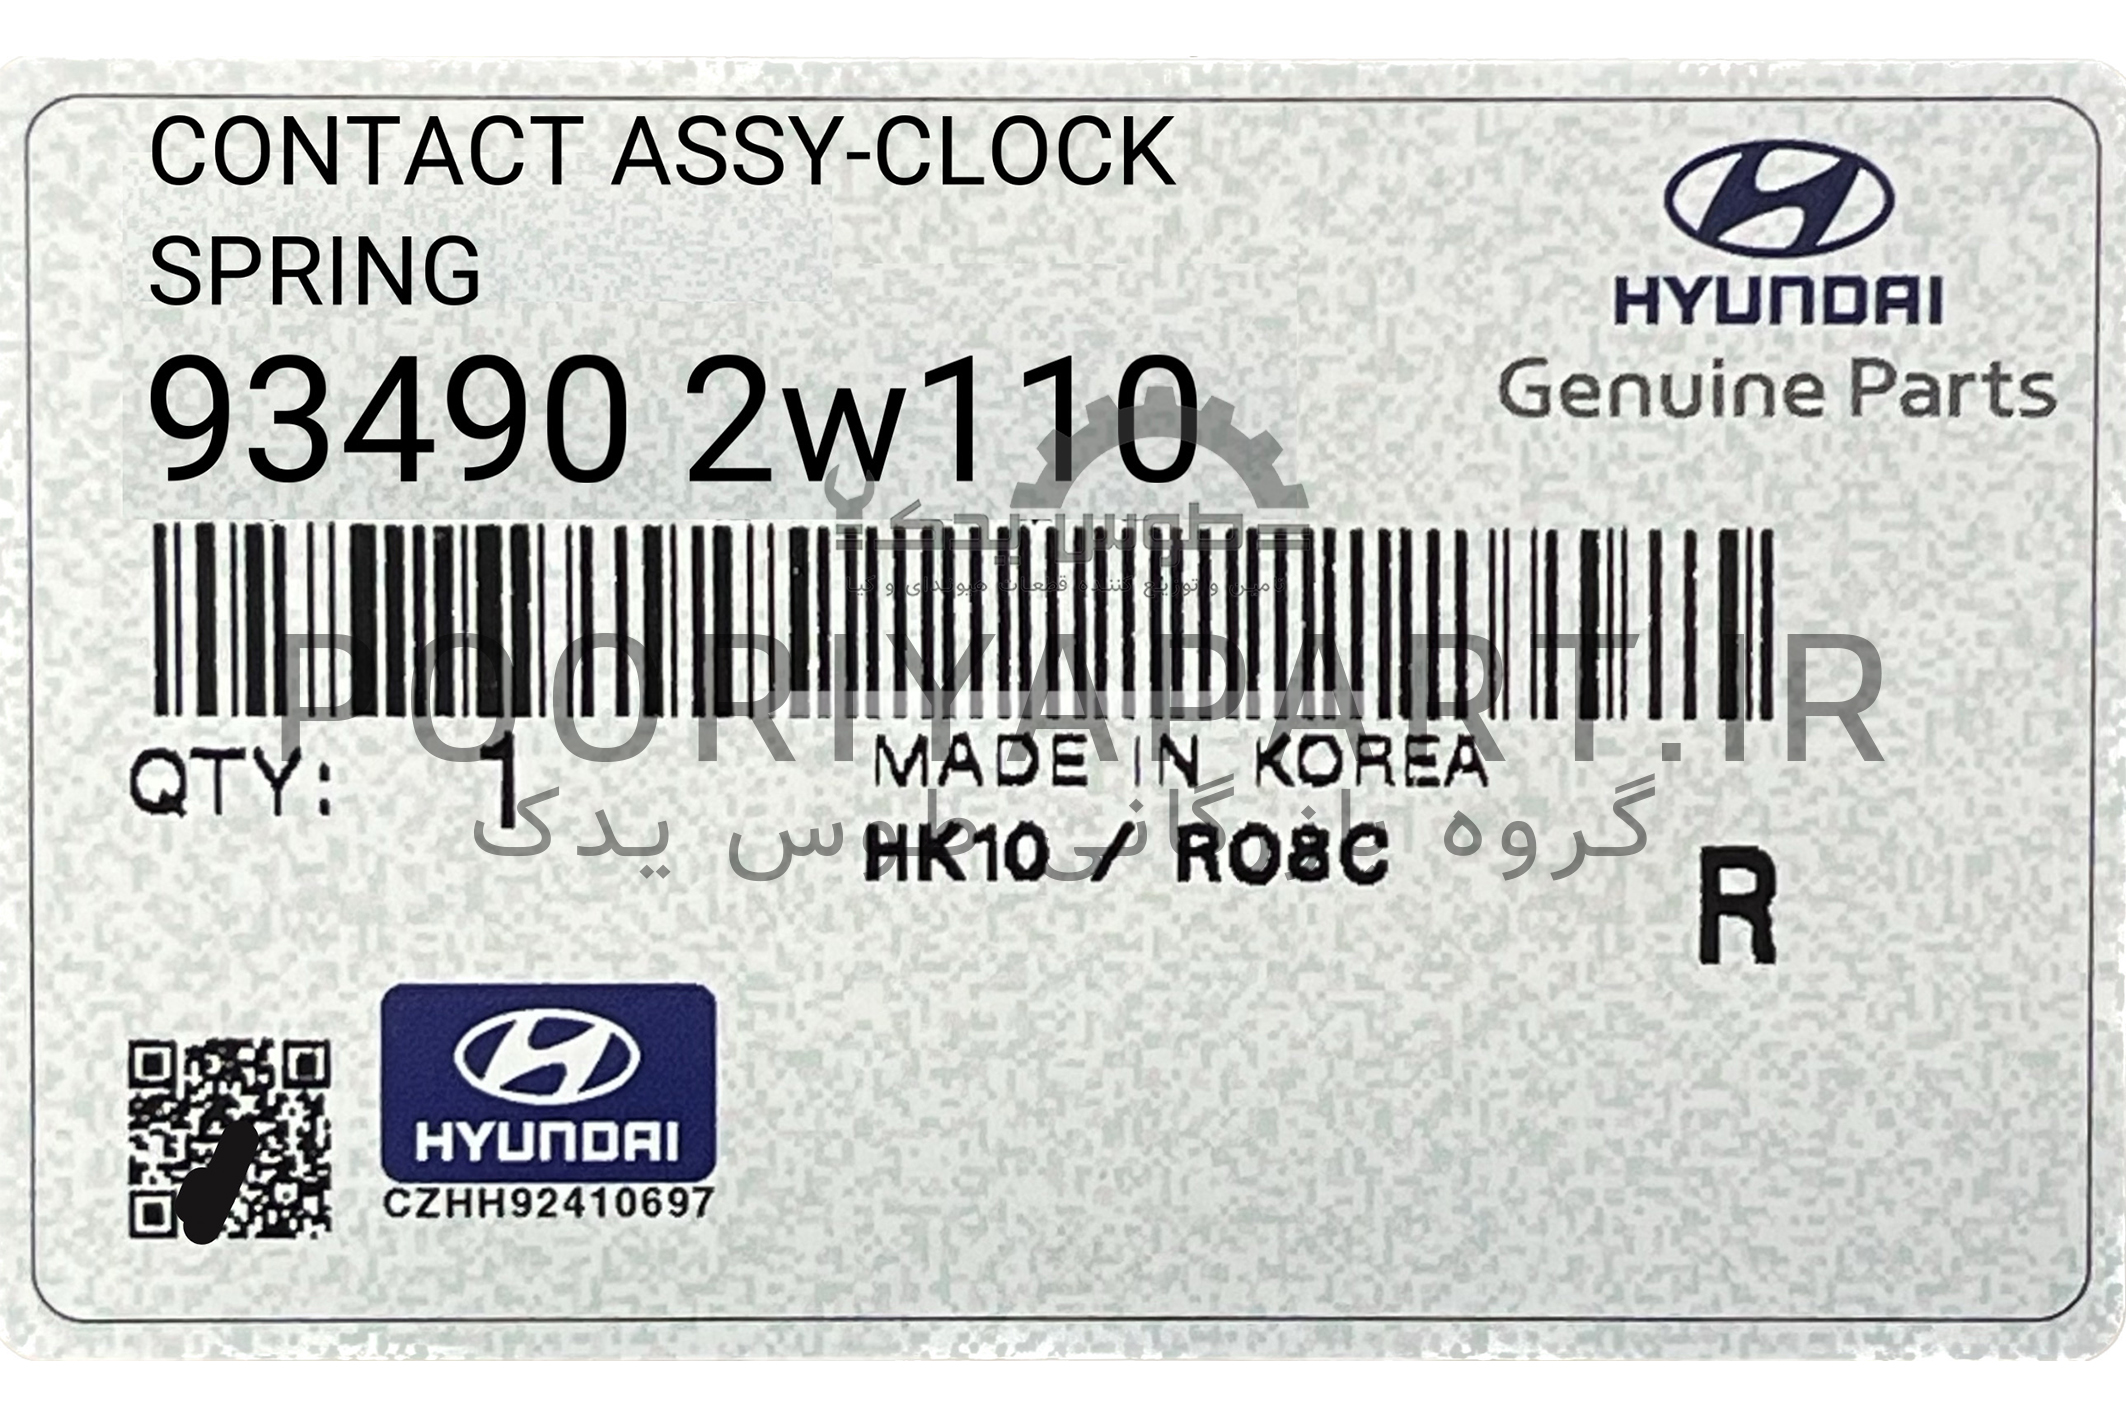 فنر ساعتی | Hyundai/KIA Genuine Parts – Mobis | 934902w110